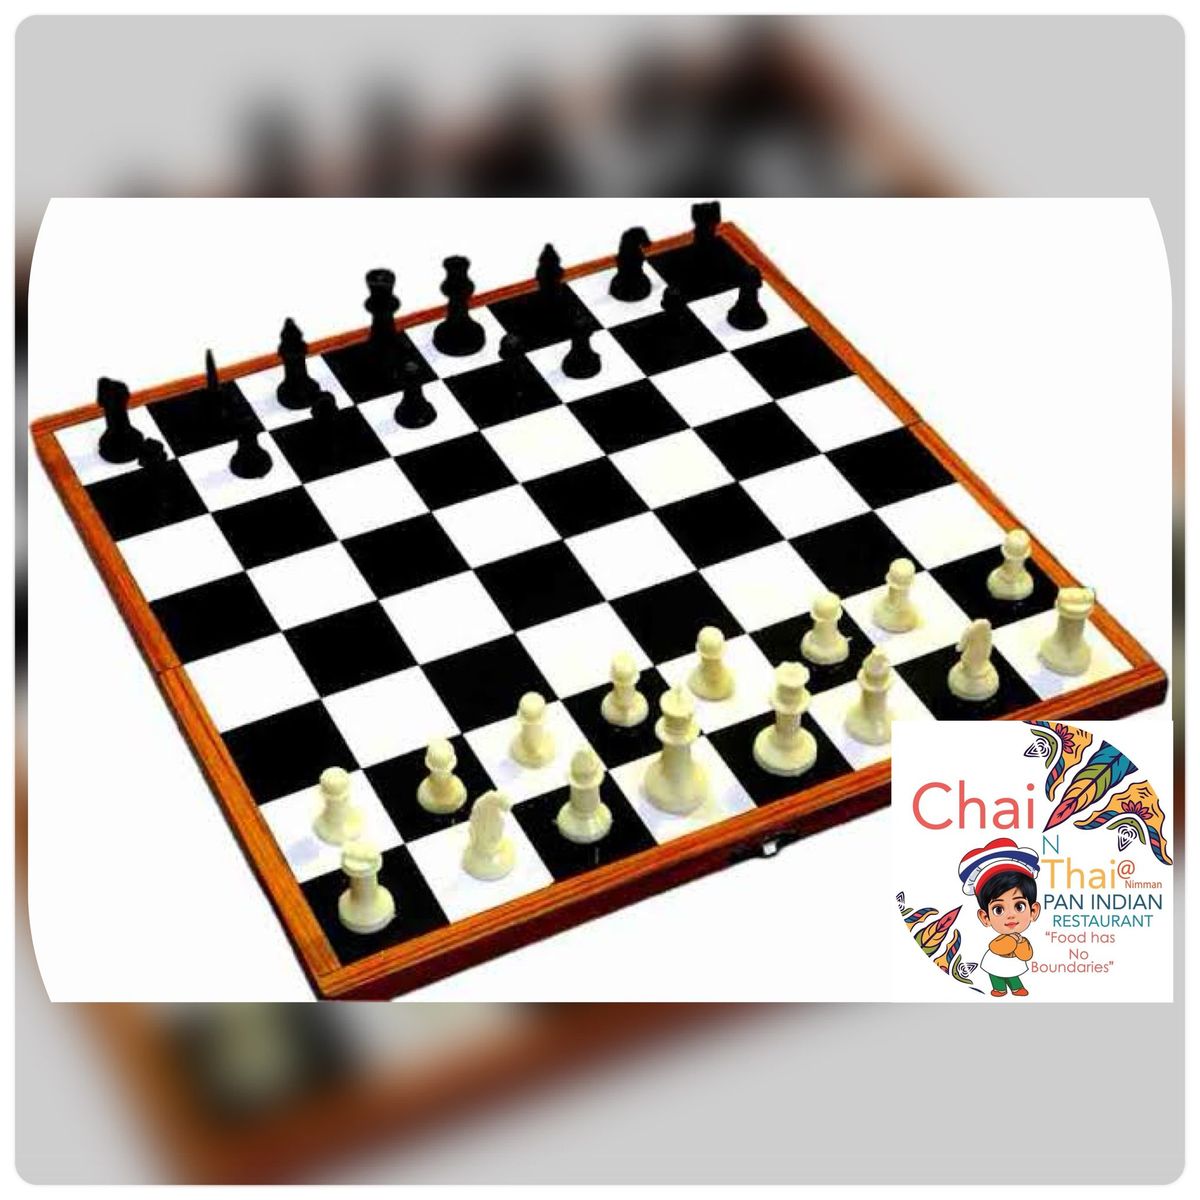 Chai N Thai Grand Masters Chess Tournament 